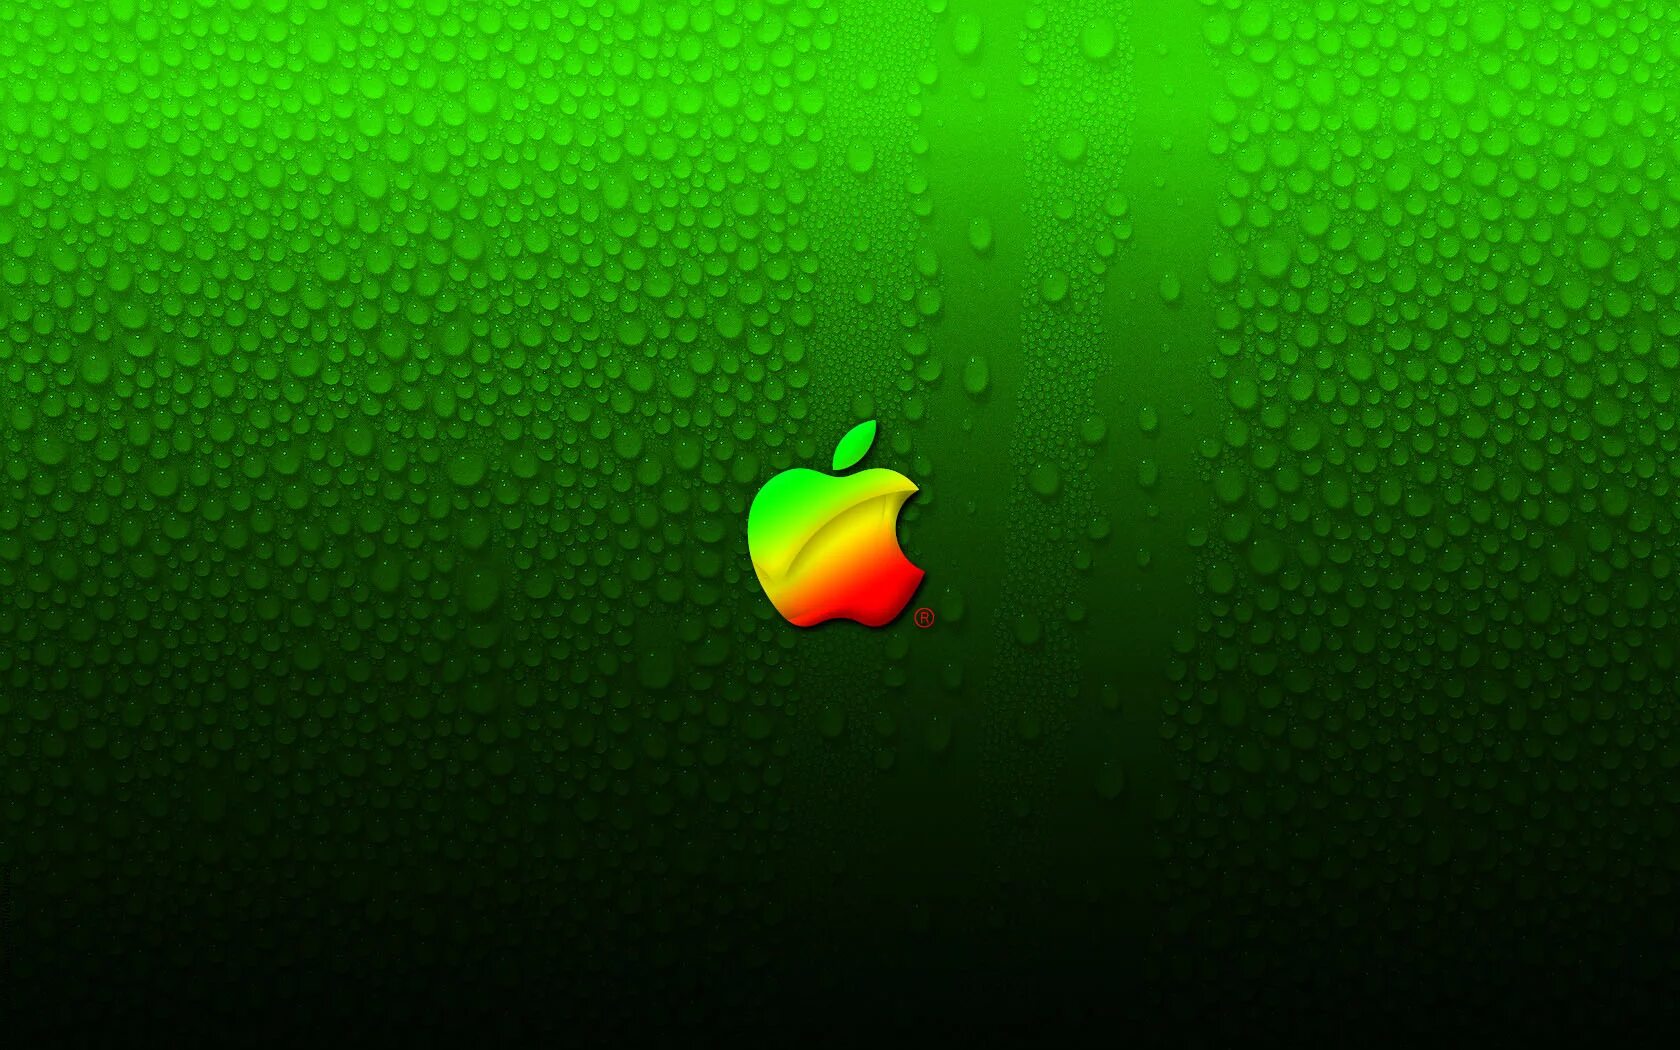 Обои на 12 мини. Зеленые обои. Зеленые обои на айфон. Обои Apple. Заставка на рабочий стол зеленая.